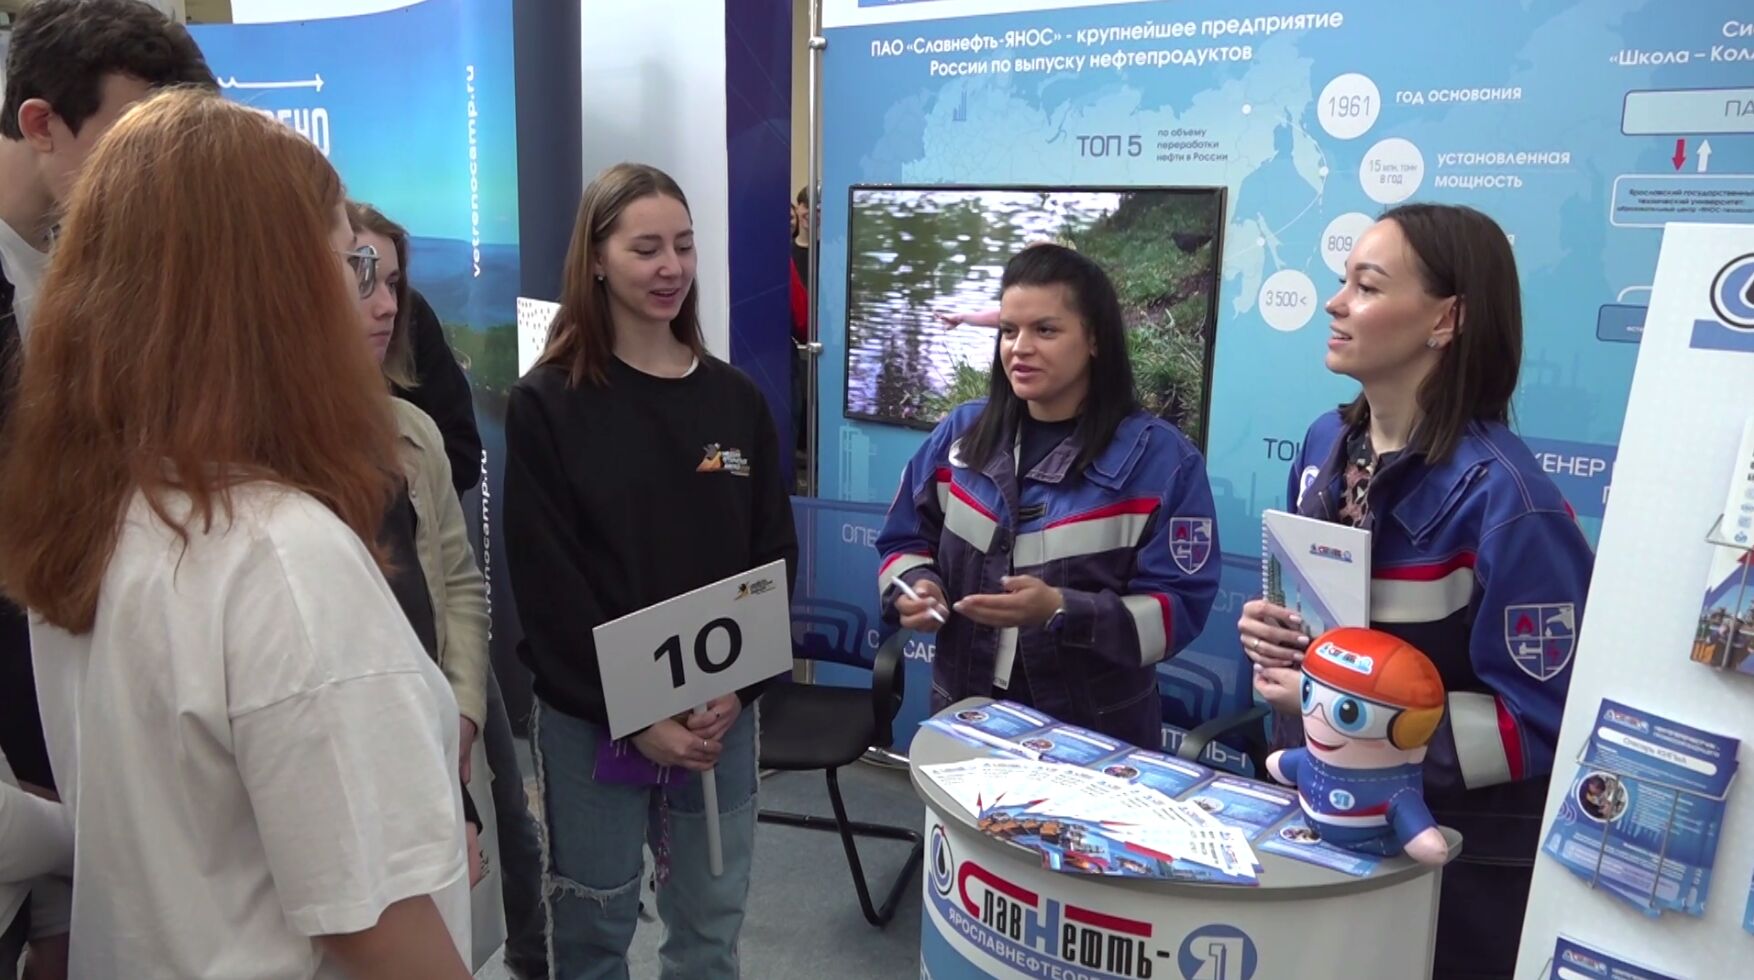 Школьники узнали об условиях работы на нефтеперерабатывающем предприятии Ярославля на площадке Профориентационного форума